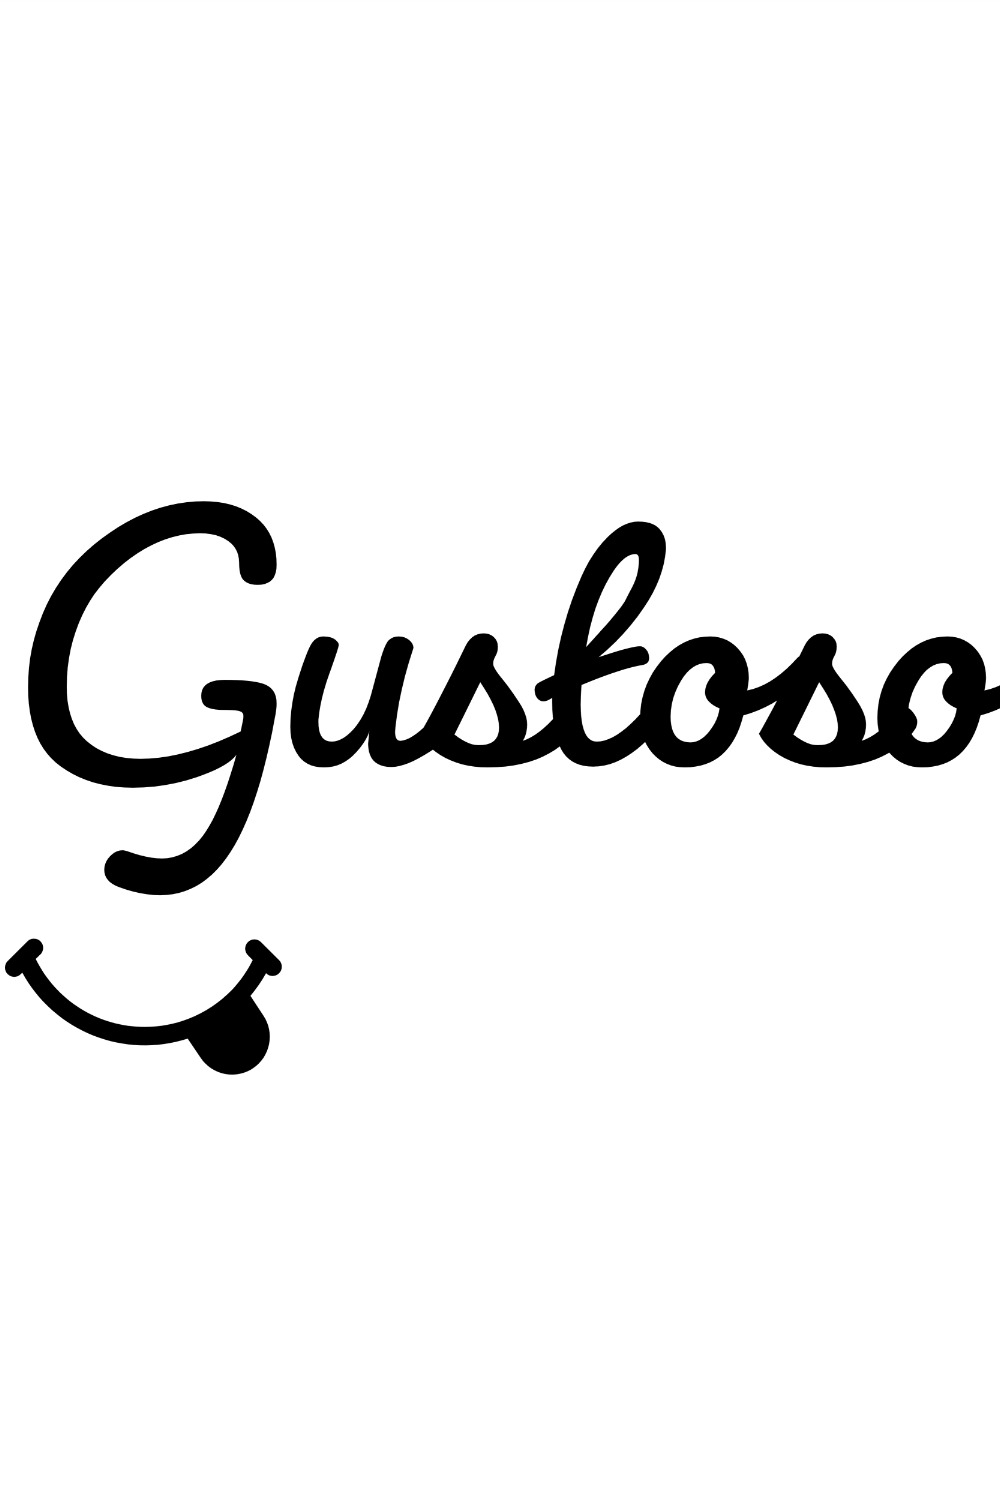 Gustoso - Restaurant Logo pinterest image.